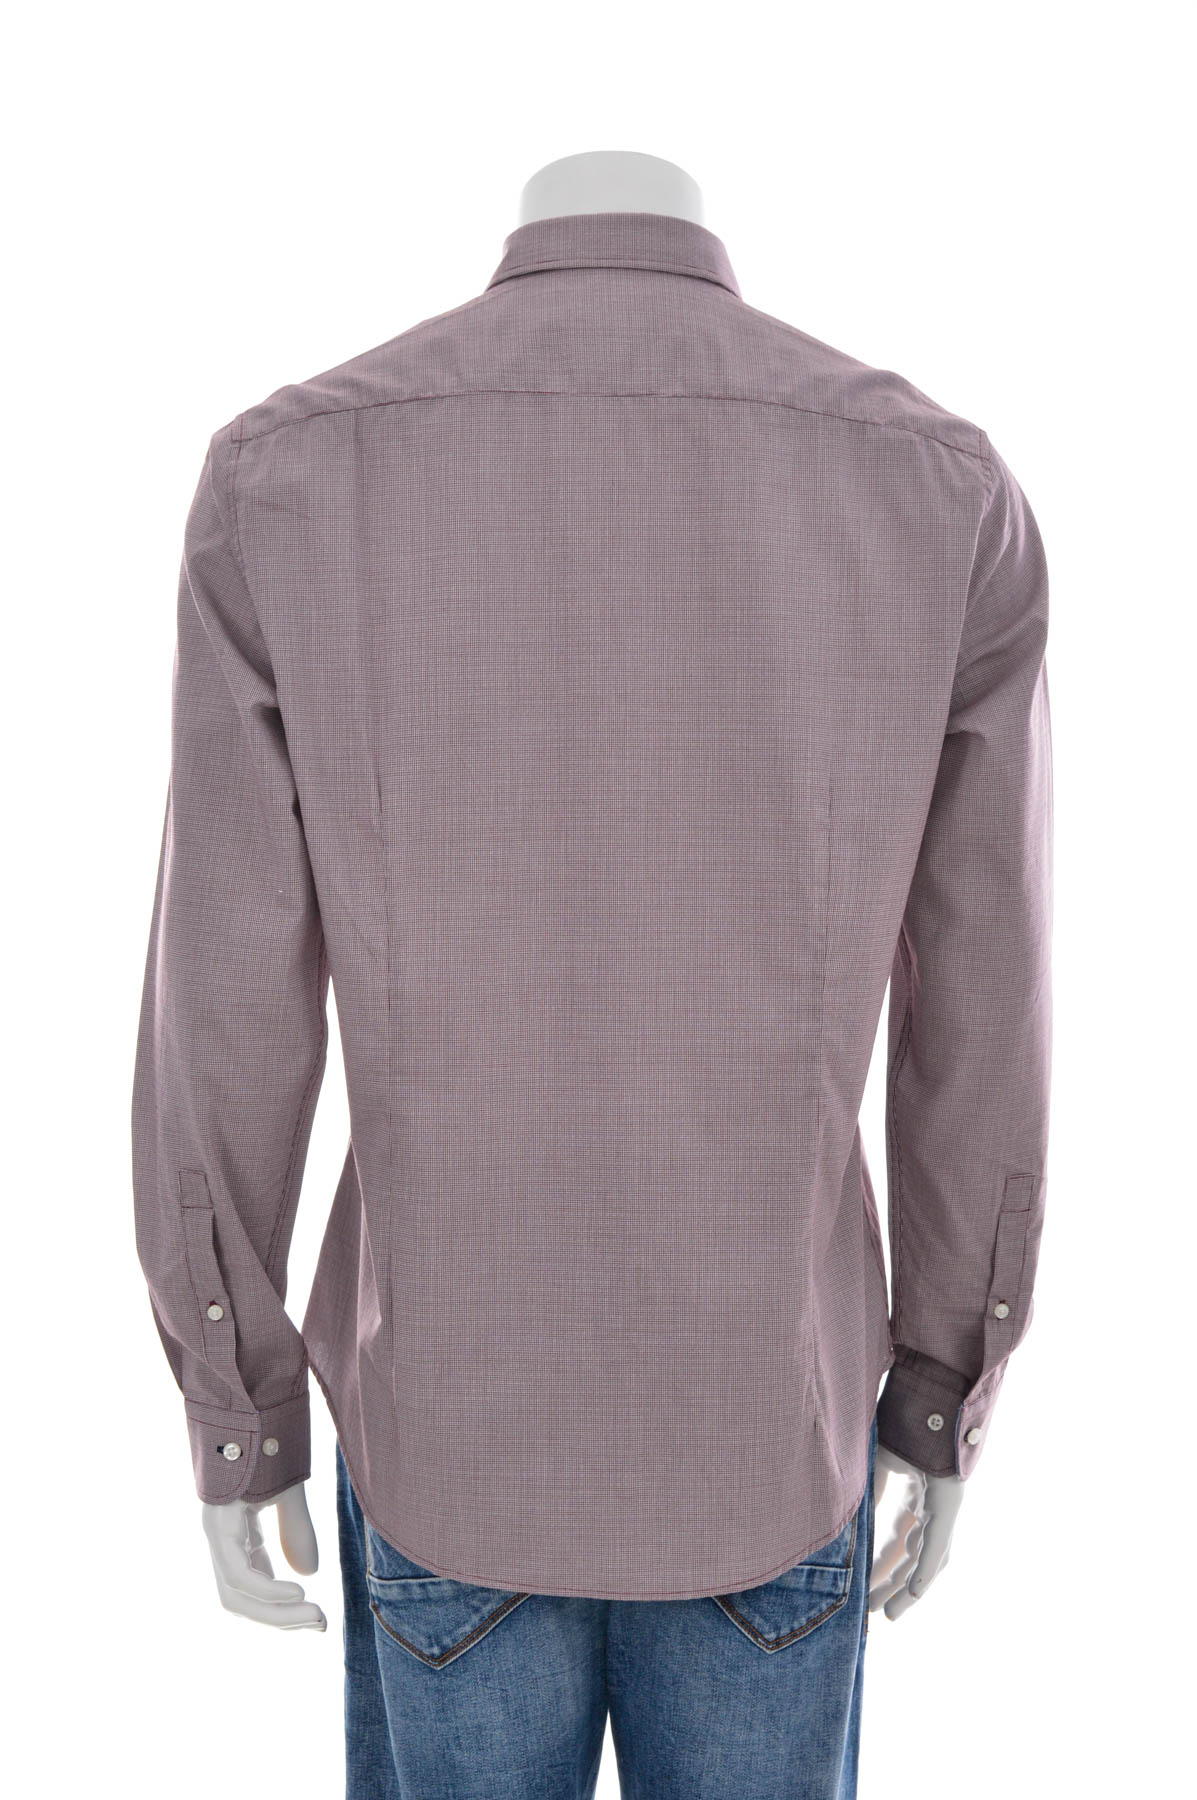 Ανδρικό πουκάμισο - PAUL HUNTER - 1